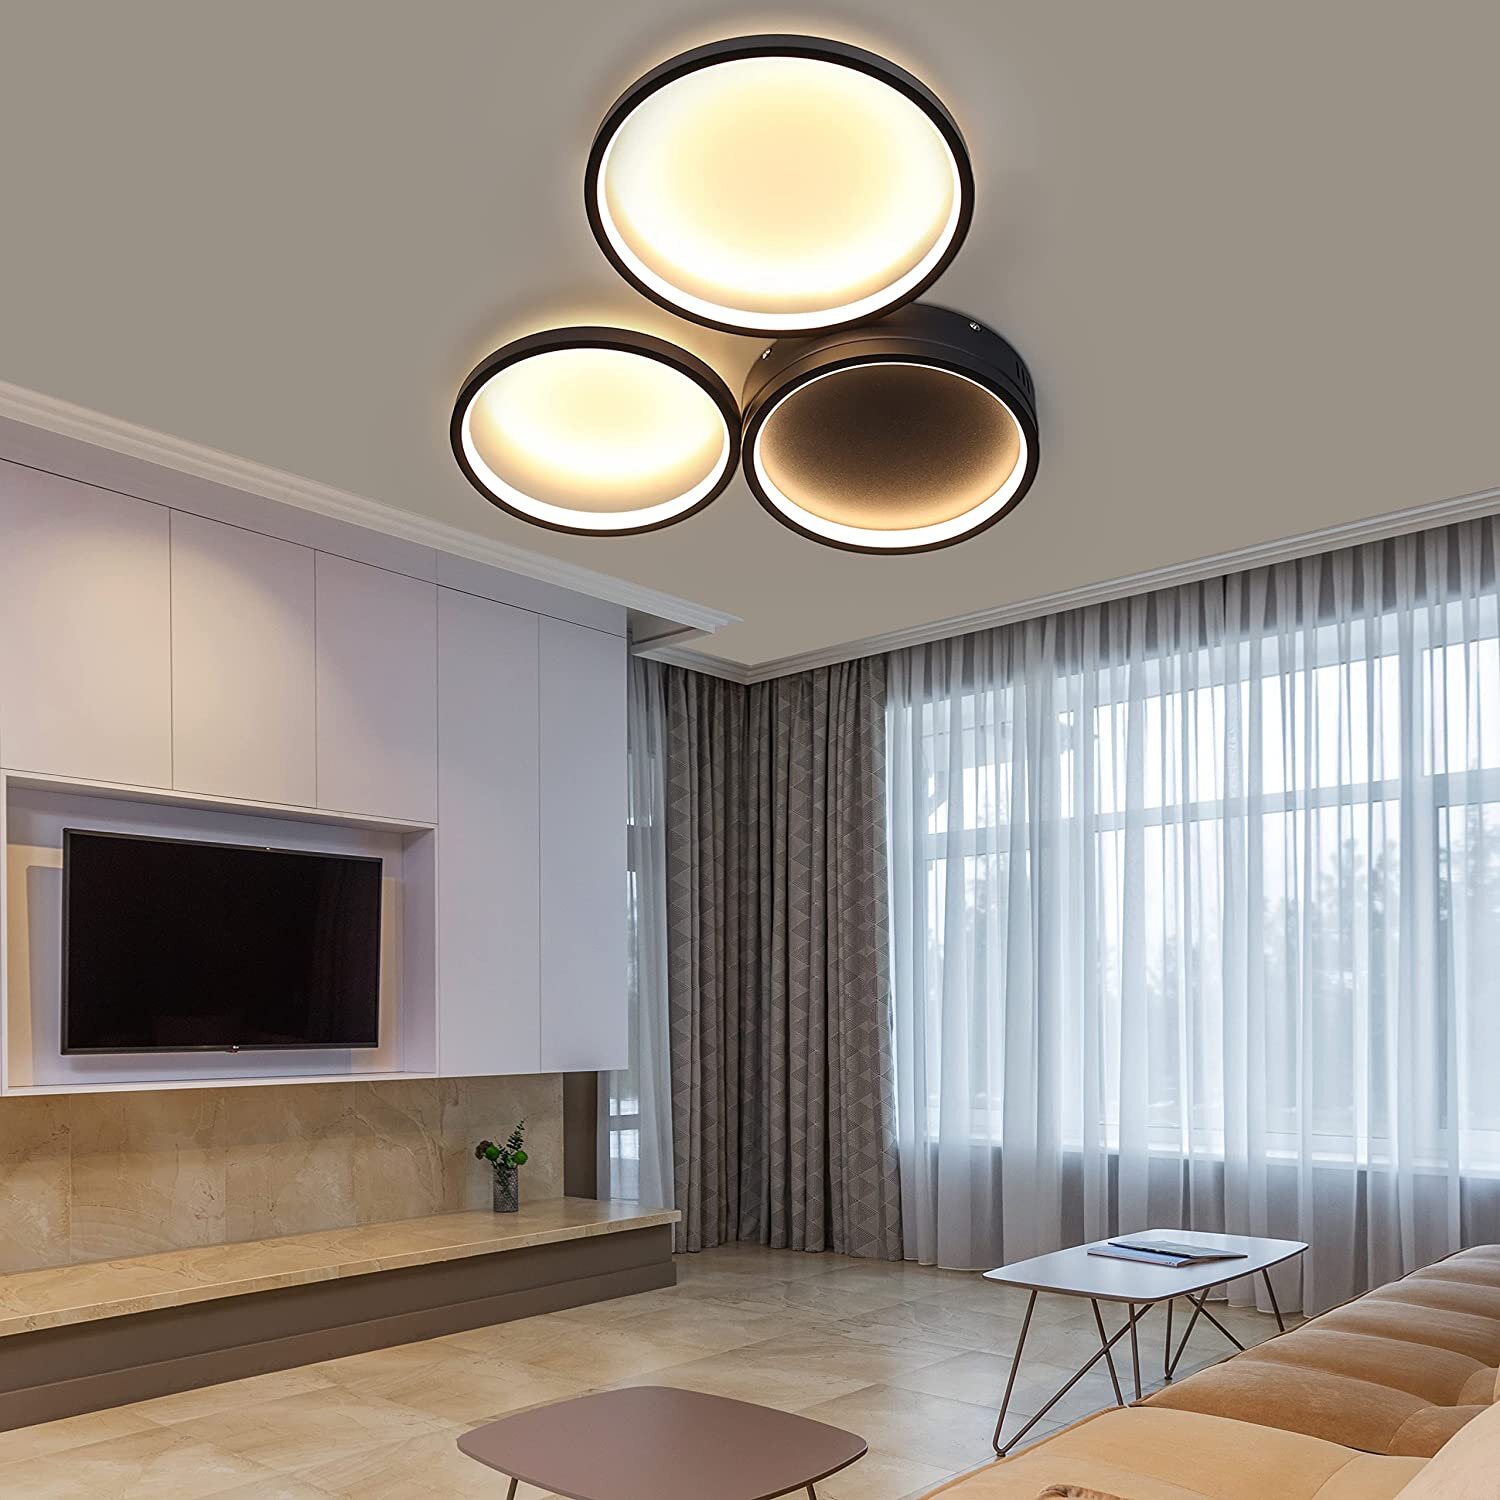 Bad Decken Beleuchtung LED Design Wohn Schlaf Zimmer Flur Dielen Lampen dimmbar 